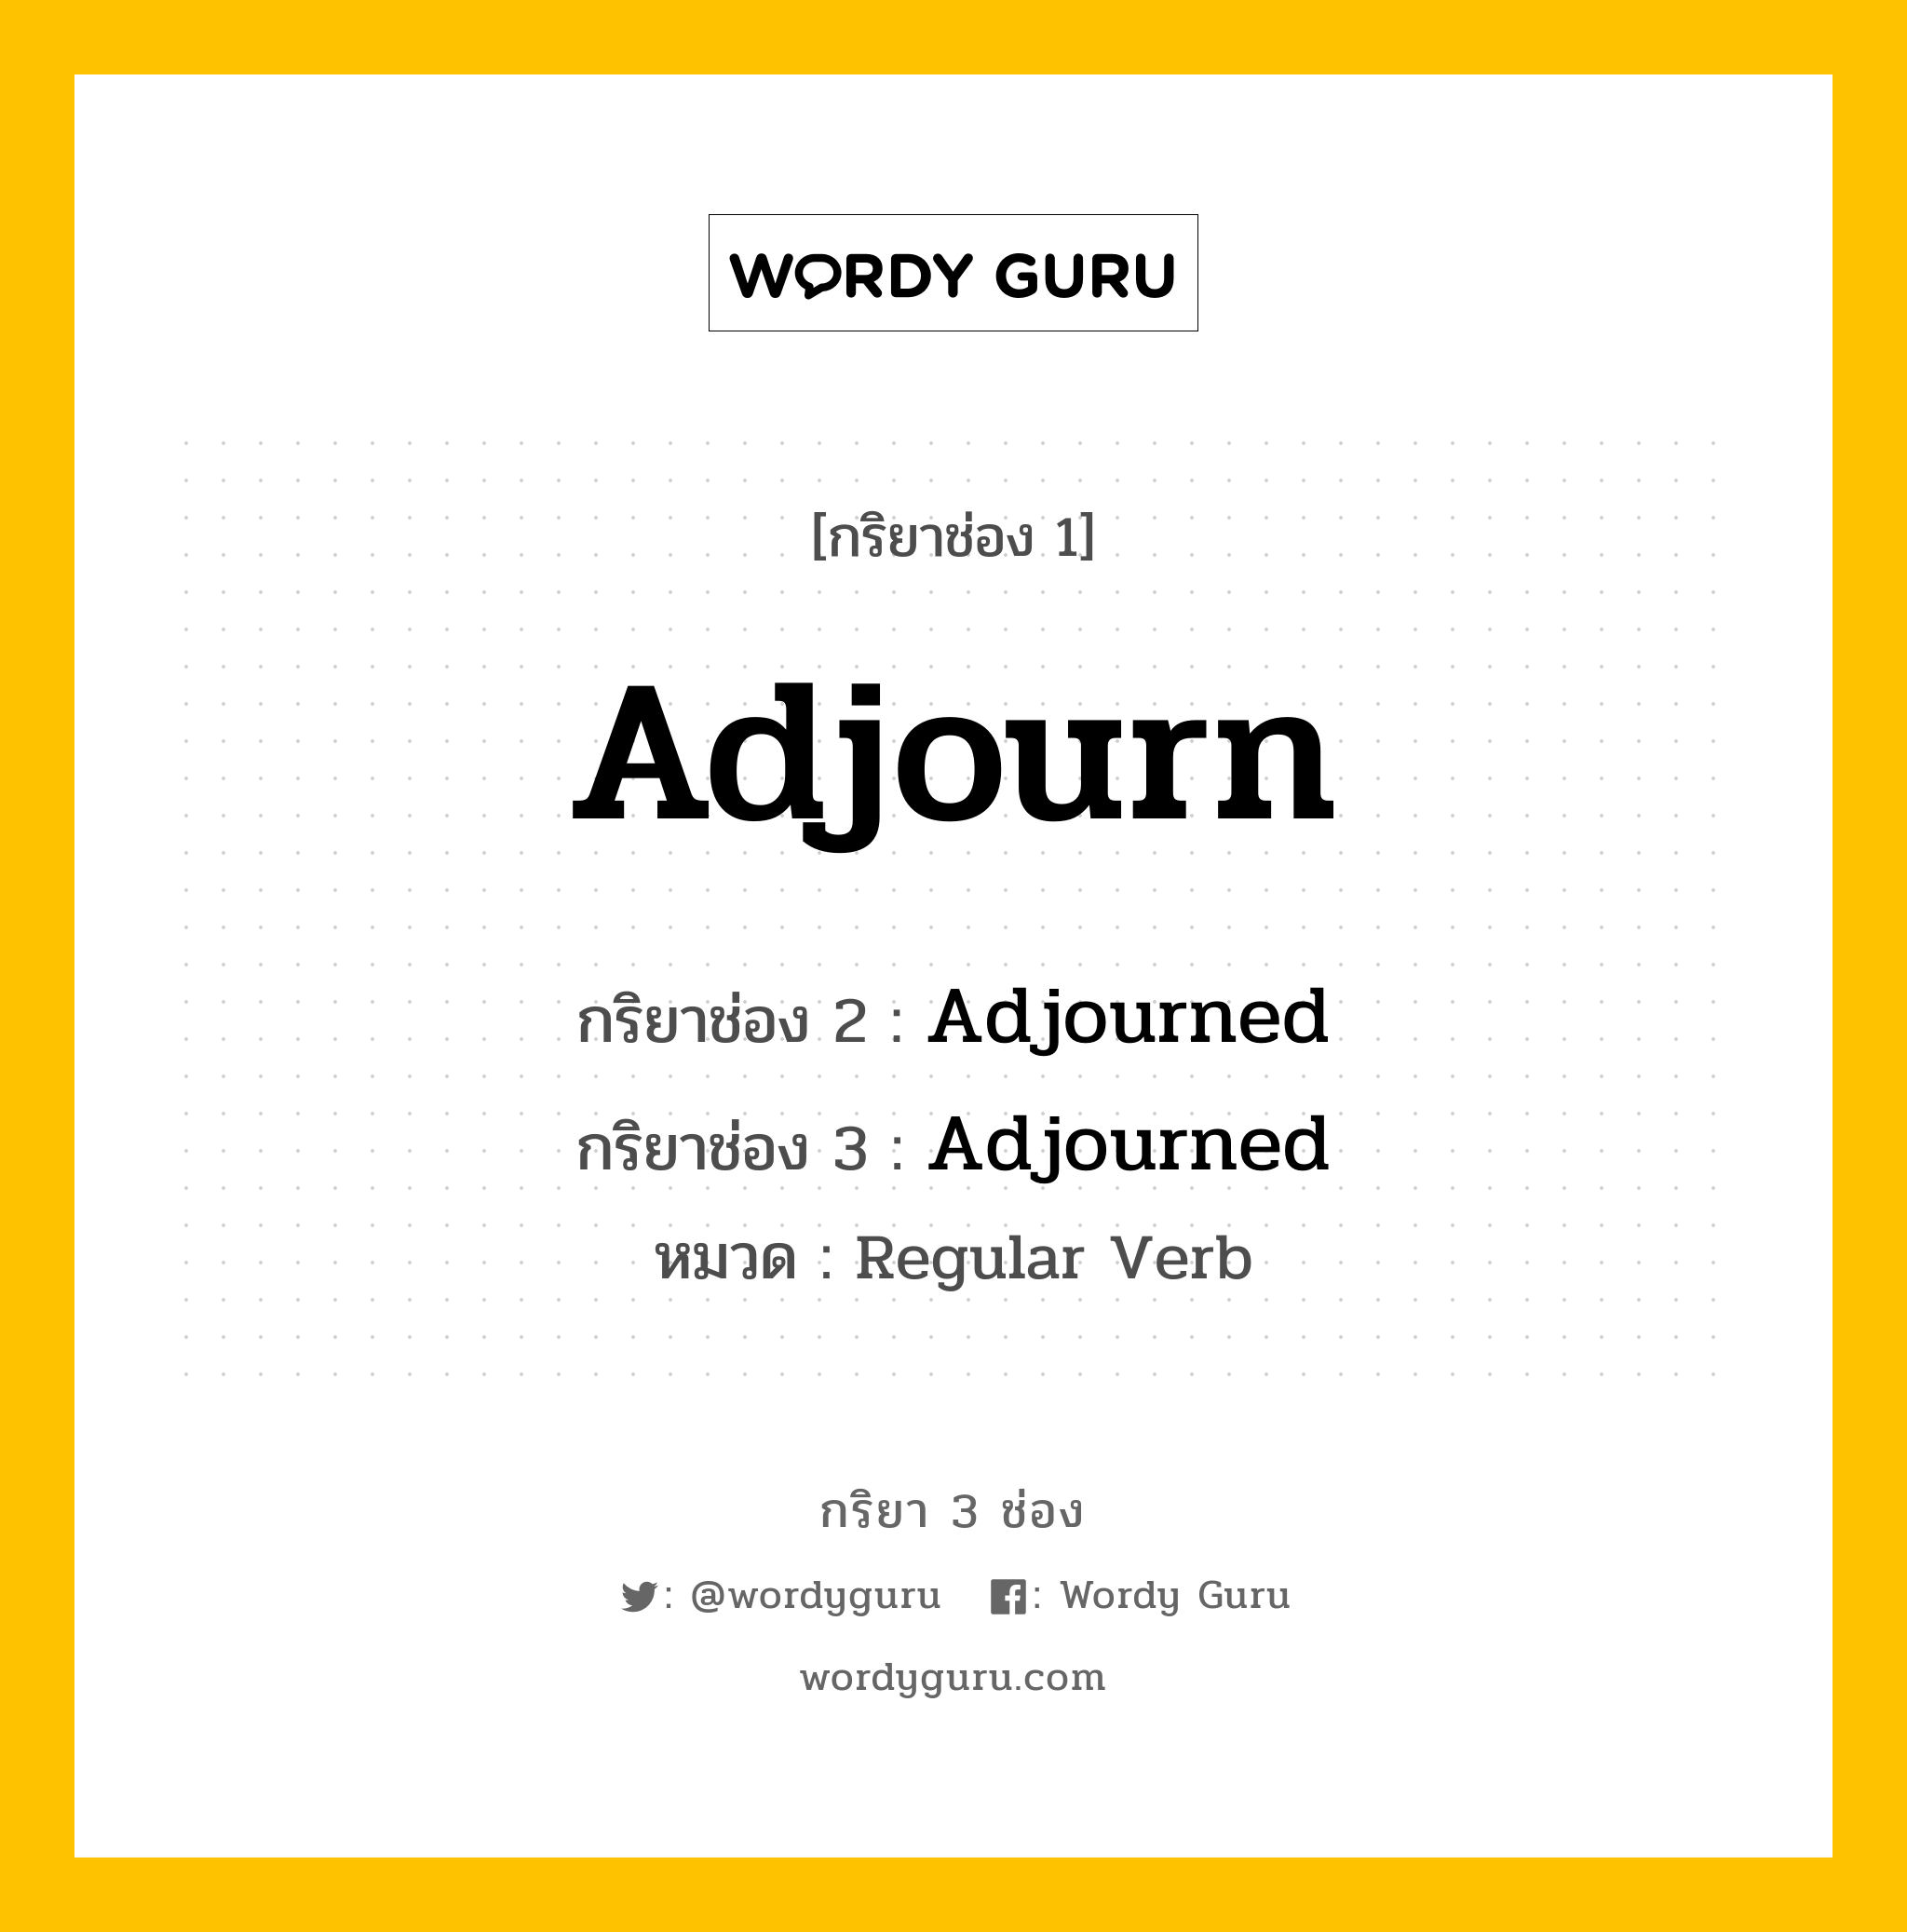 Adjourn มีกริยา 3 ช่องอะไรบ้าง? คำศัพท์ในกลุ่มประเภท Regular Verb, กริยาช่อง 1 Adjourn กริยาช่อง 2 Adjourned กริยาช่อง 3 Adjourned หมวด Regular Verb หมวด Regular Verb